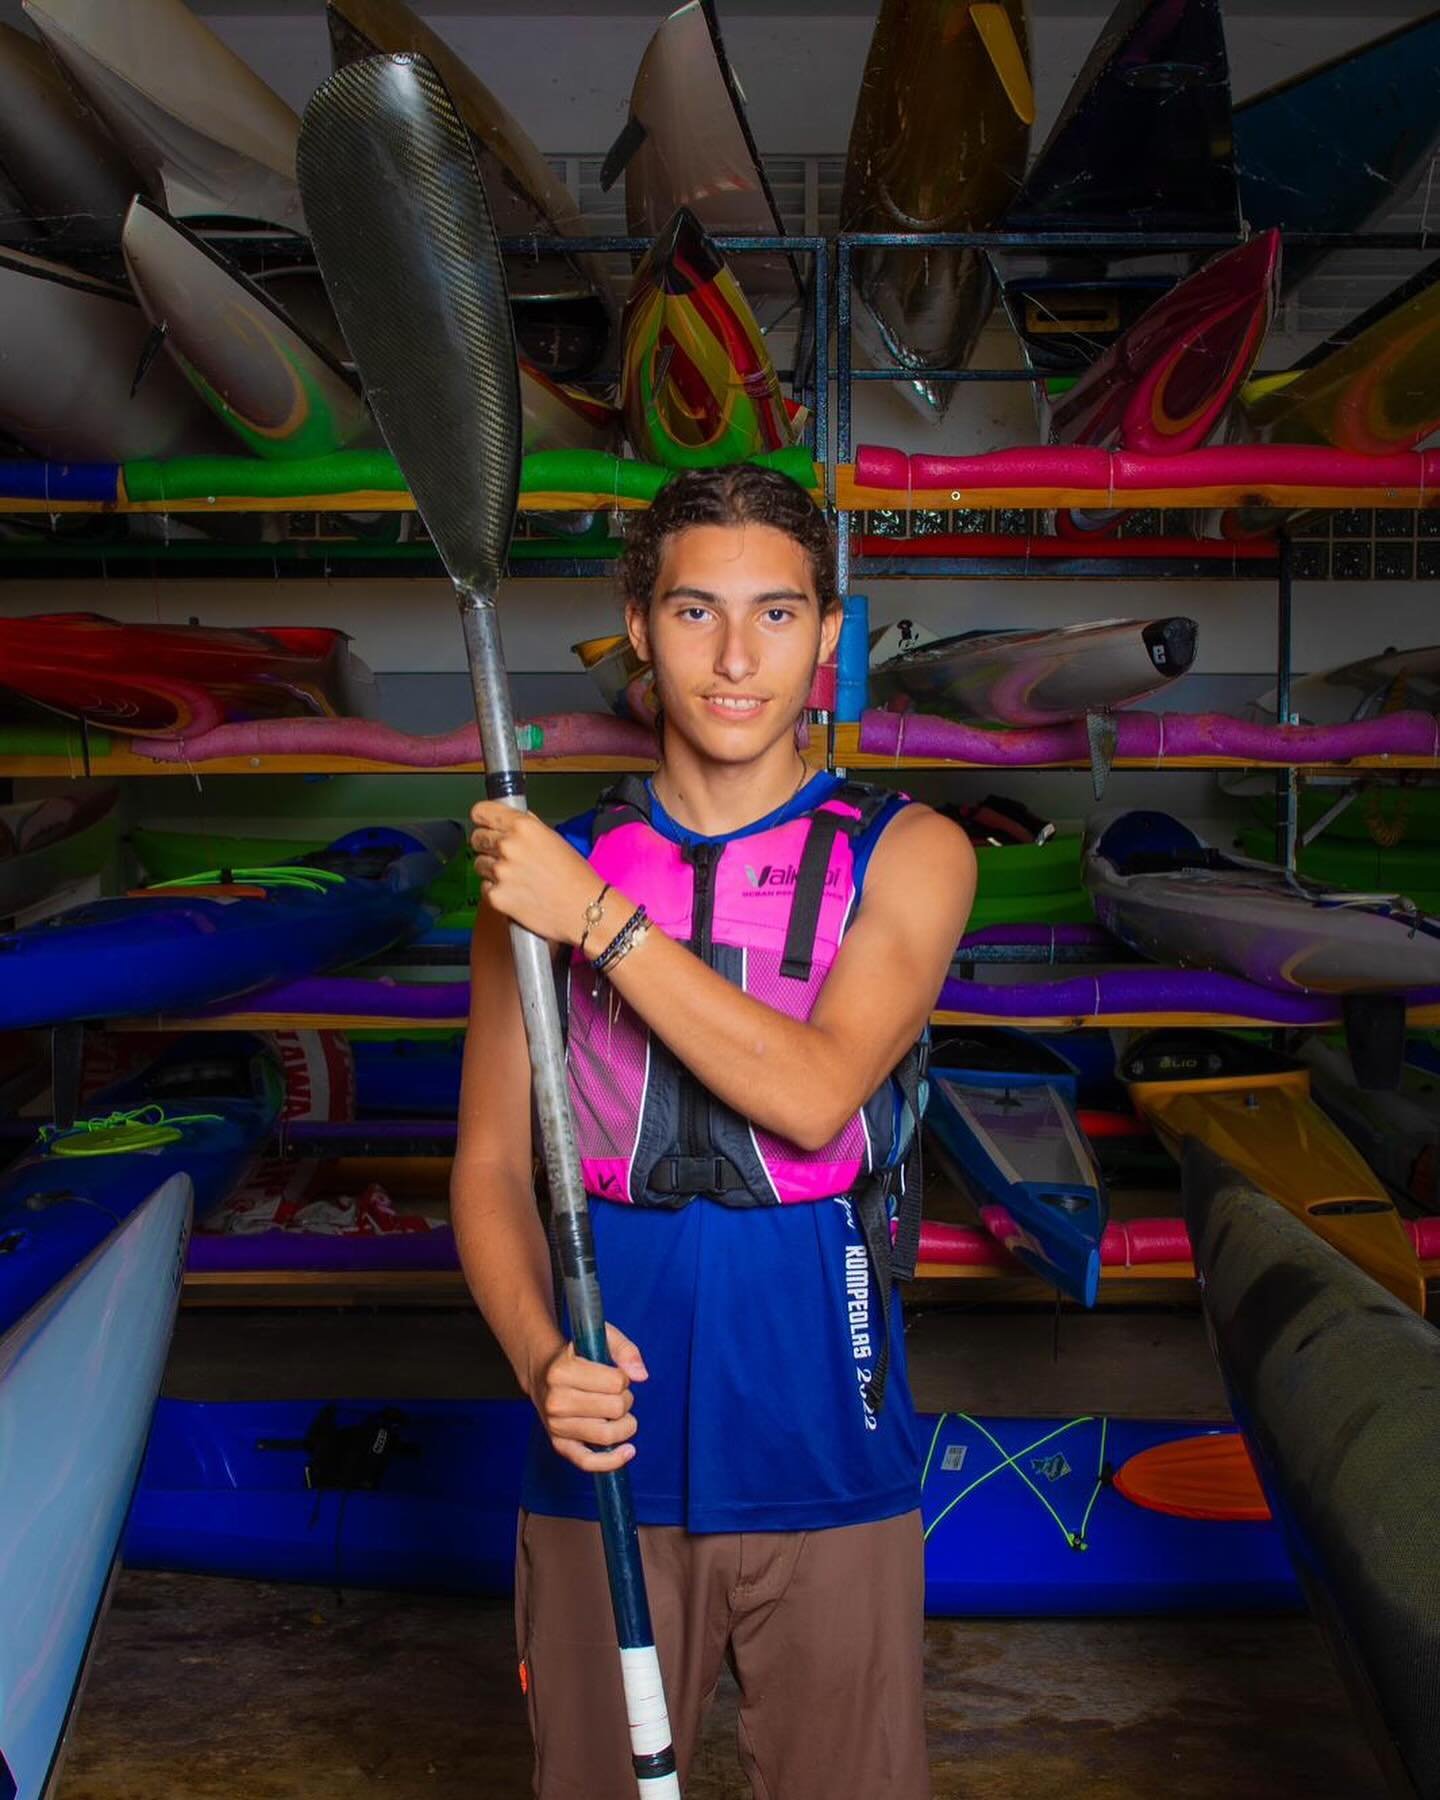 En ruta al Ocean Challenge: Sebasti&aacute;n Acosta 

&quot;Tengo 15 a&ntilde;os y he estado practicando kayak por 2 a&ntilde;os. Me gusta mucho la m&uacute;sica y obvio me gusta el kayak, practico la guitarra y tambi&eacute;n me gusta armar Los Gund